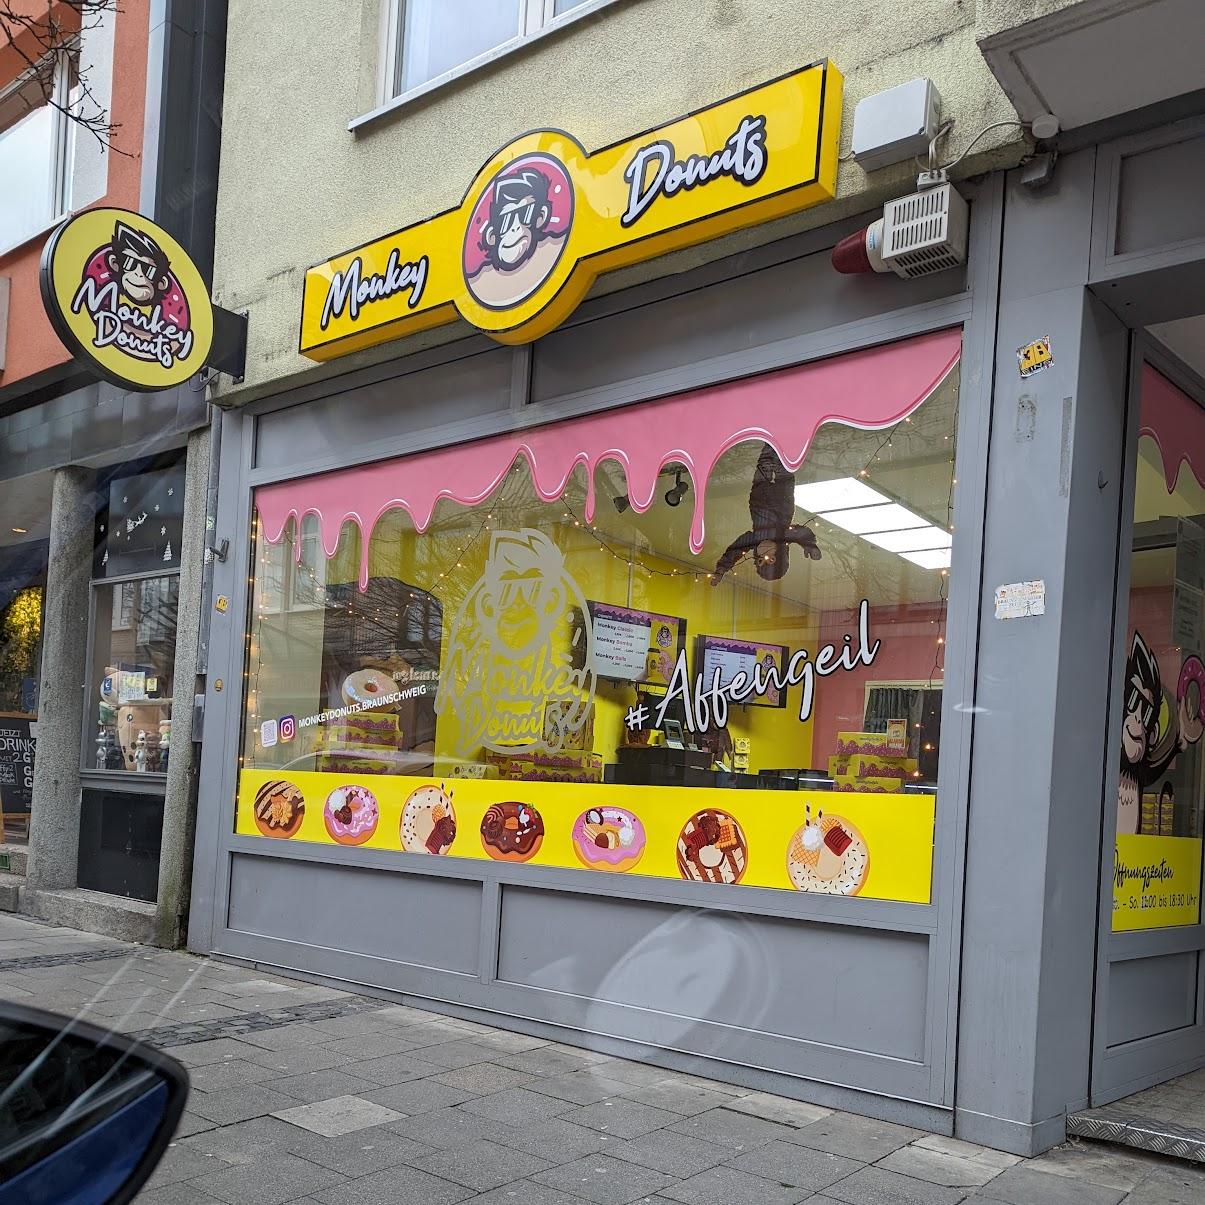 Restaurant "Monkey Donuts Braunschweig" in Braunschweig